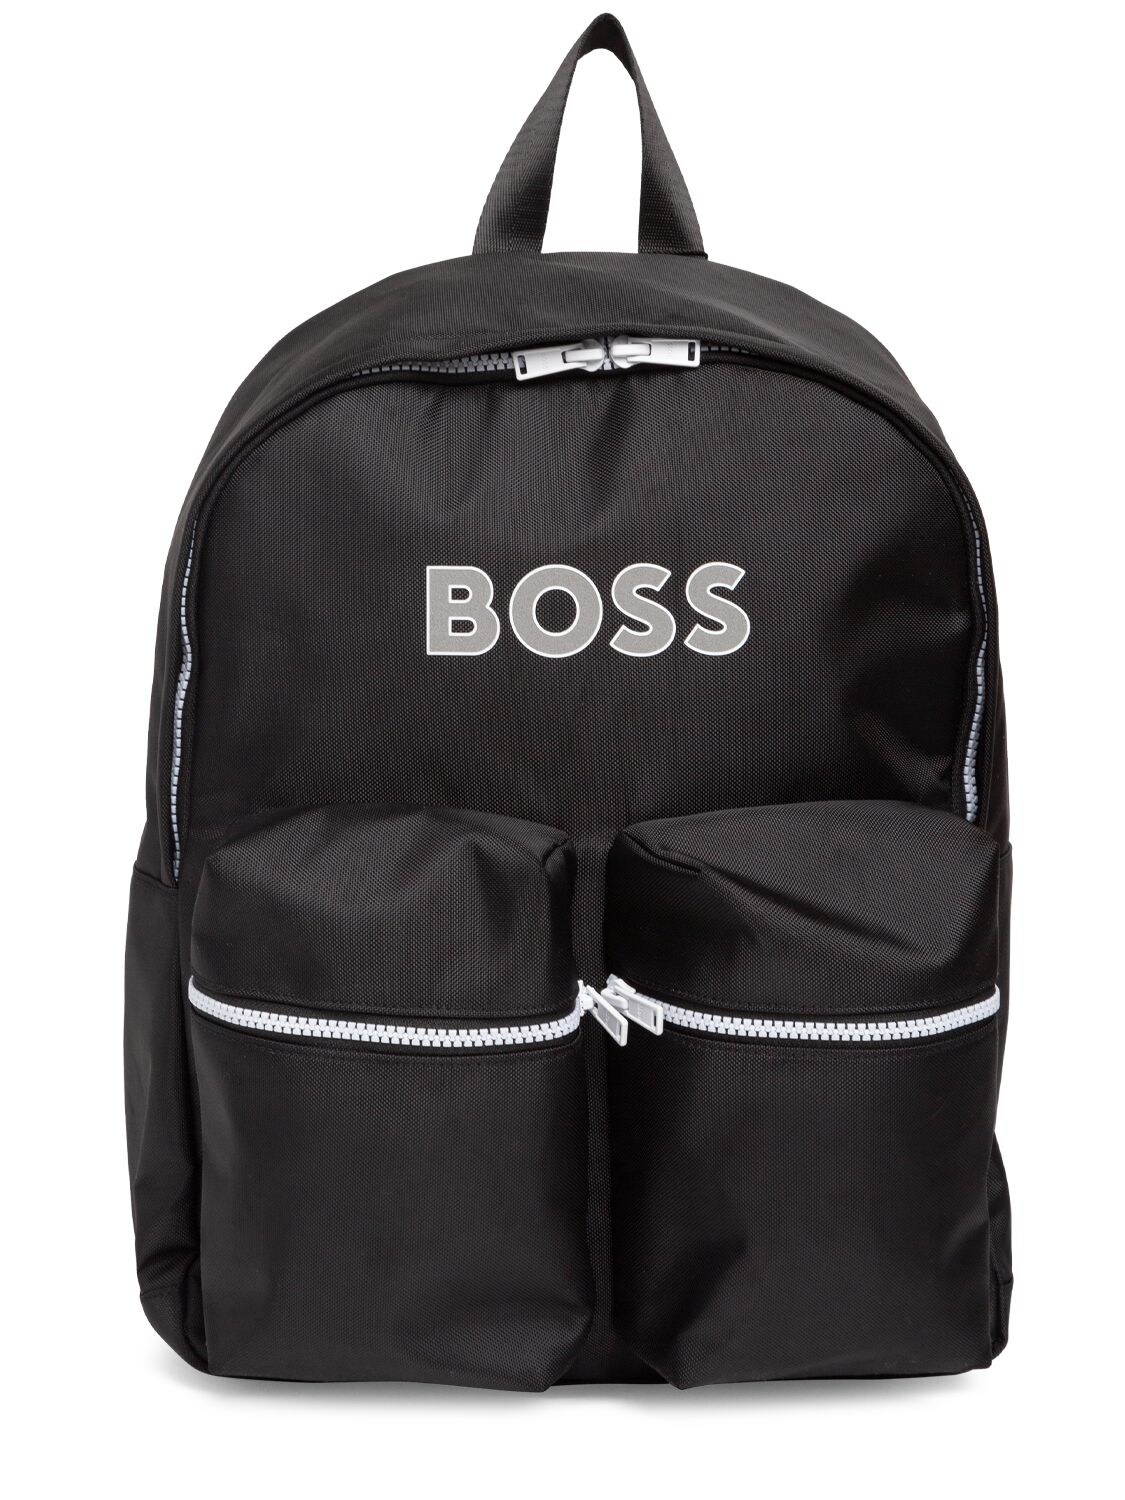 Hugo Boss Kids' Nylon Backpack W/ Logo In Black